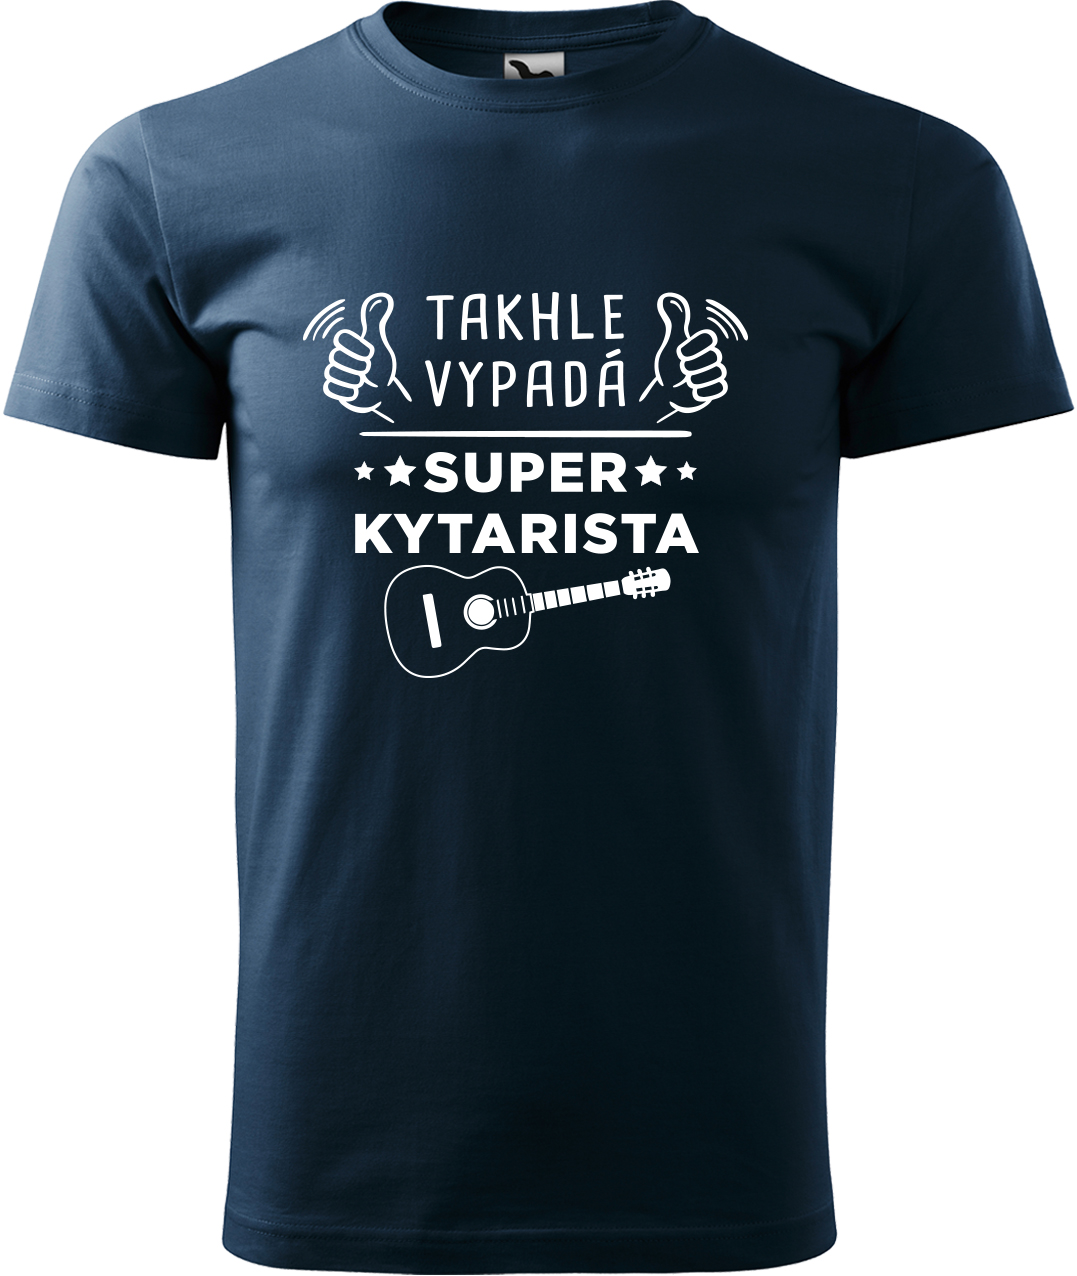 Pánské tričko s kytarou - Super kytarista Velikost: 4XL, Barva: Námořní modrá (02), Střih: pánský